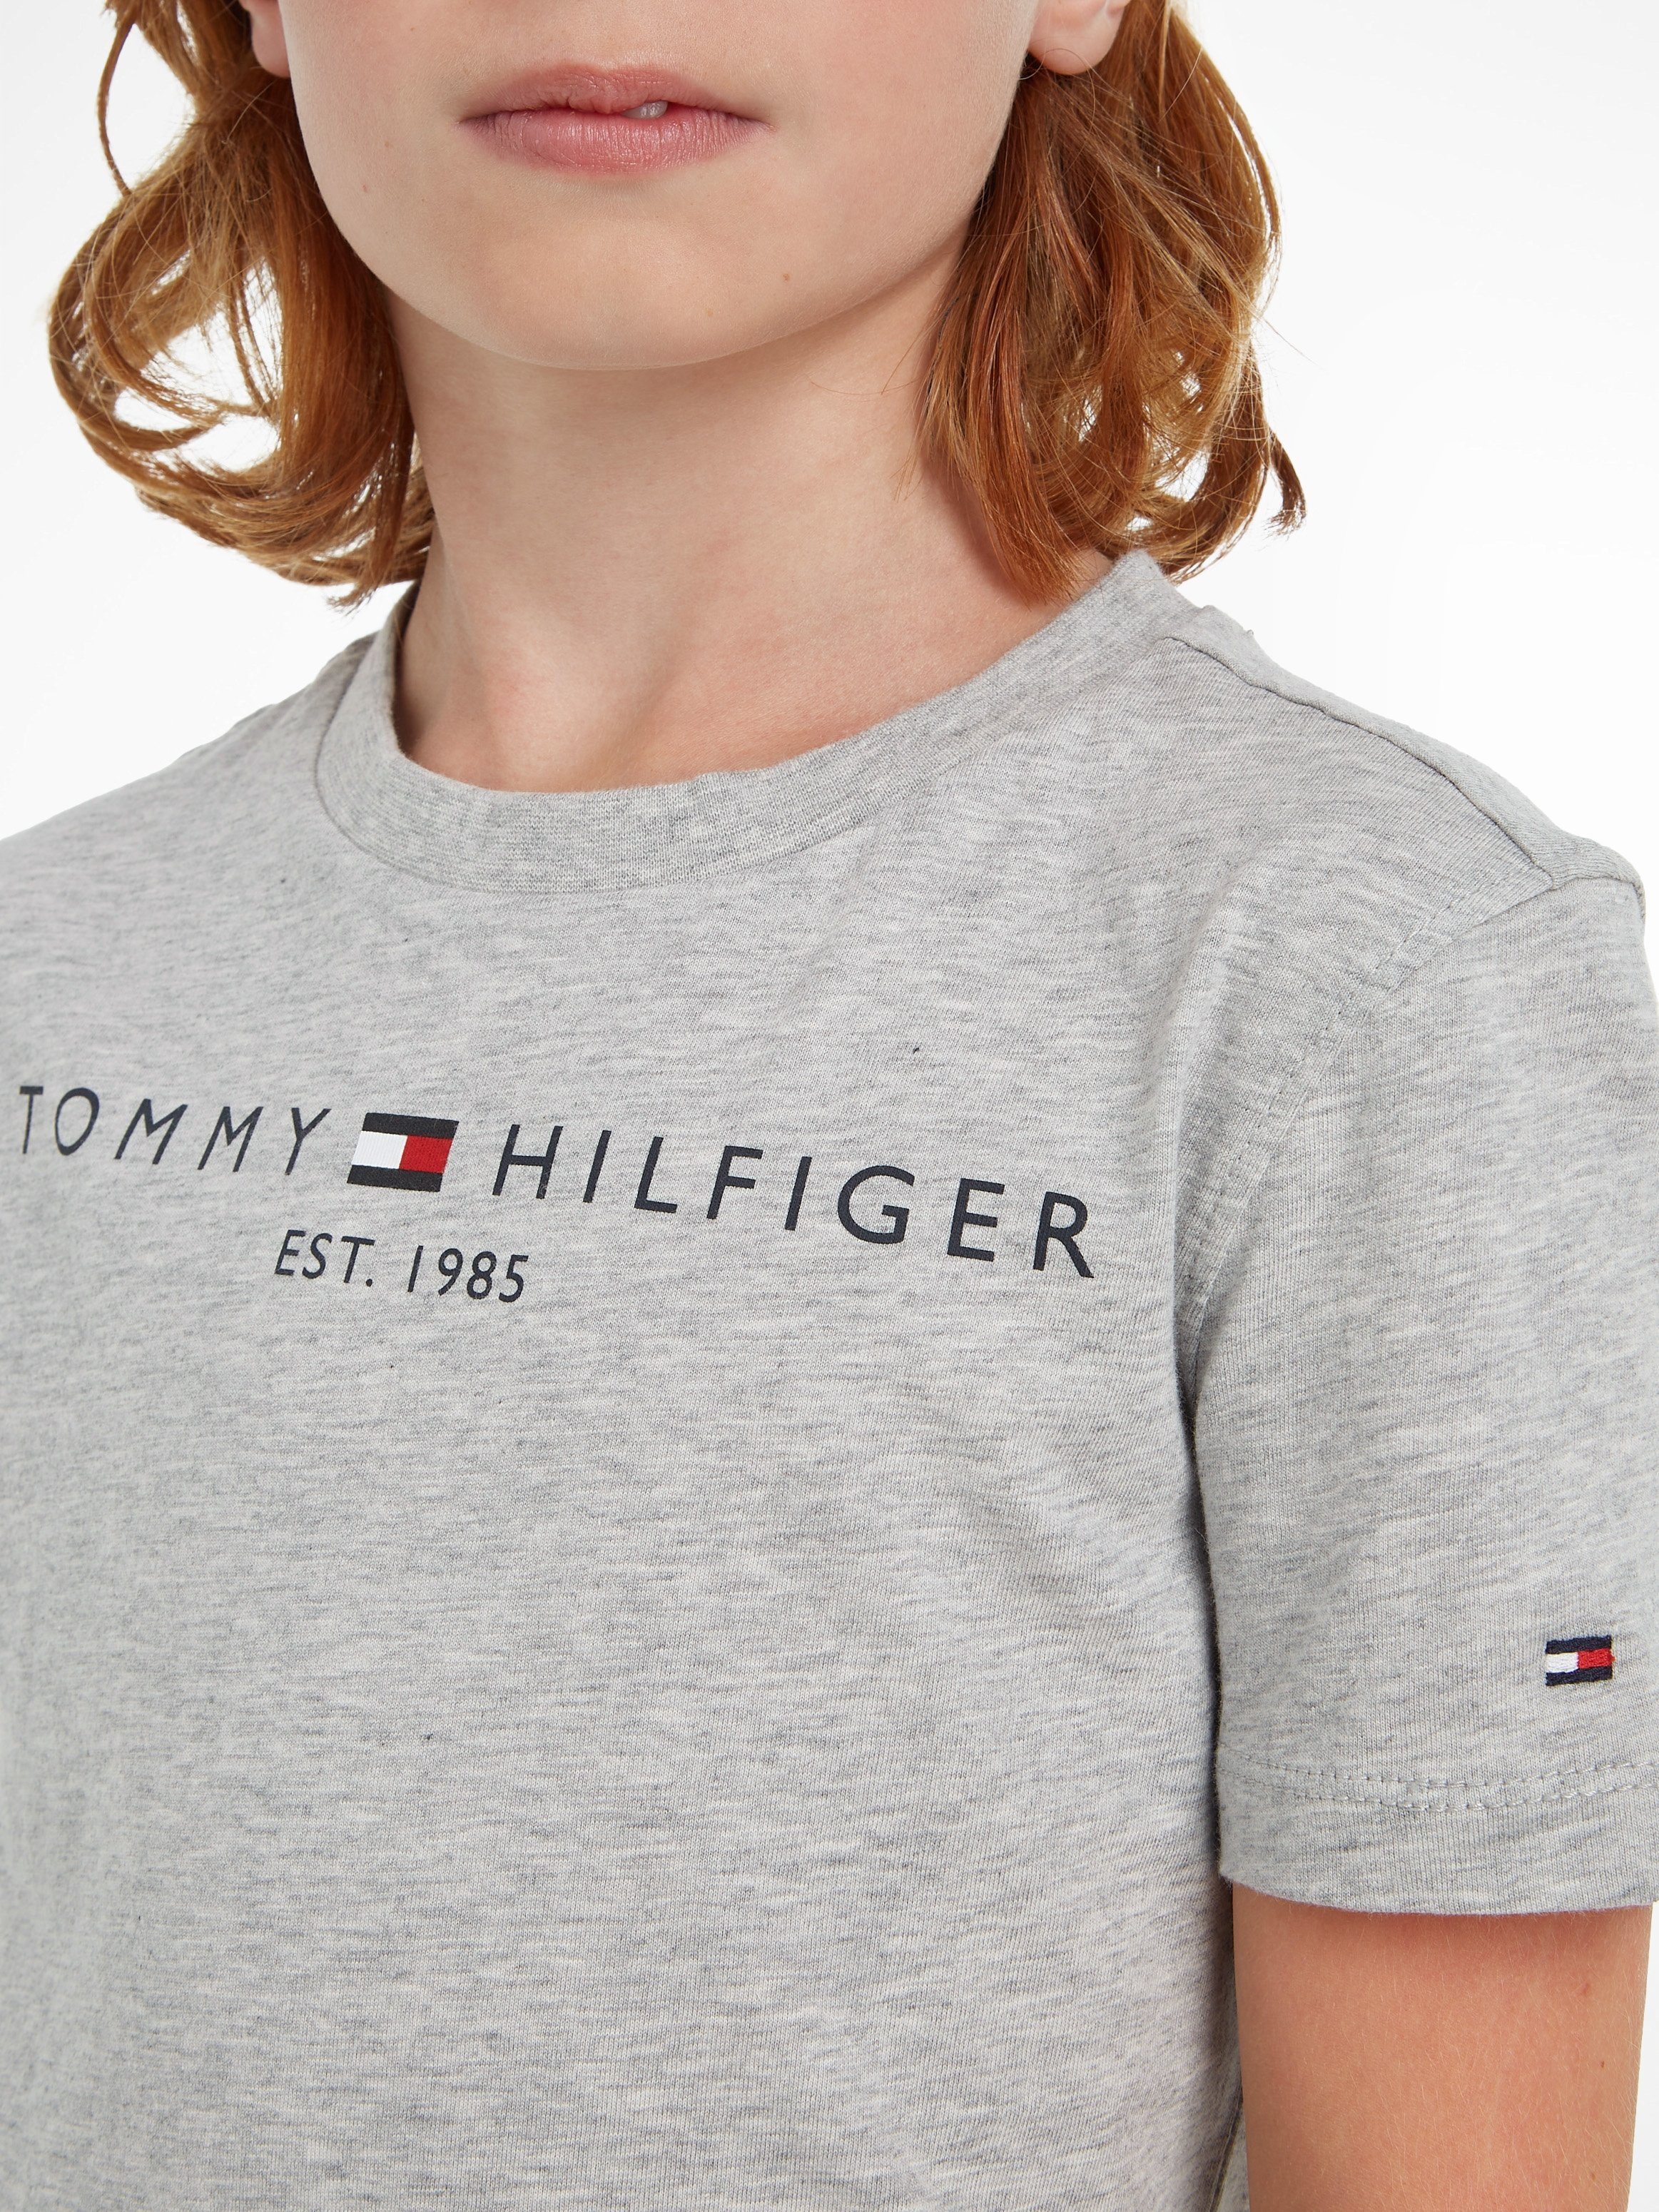 ESSENTIAL Kinder T-Shirt Junior Jungen und Hilfiger Tommy MiniMe,für Mädchen Kids TEE